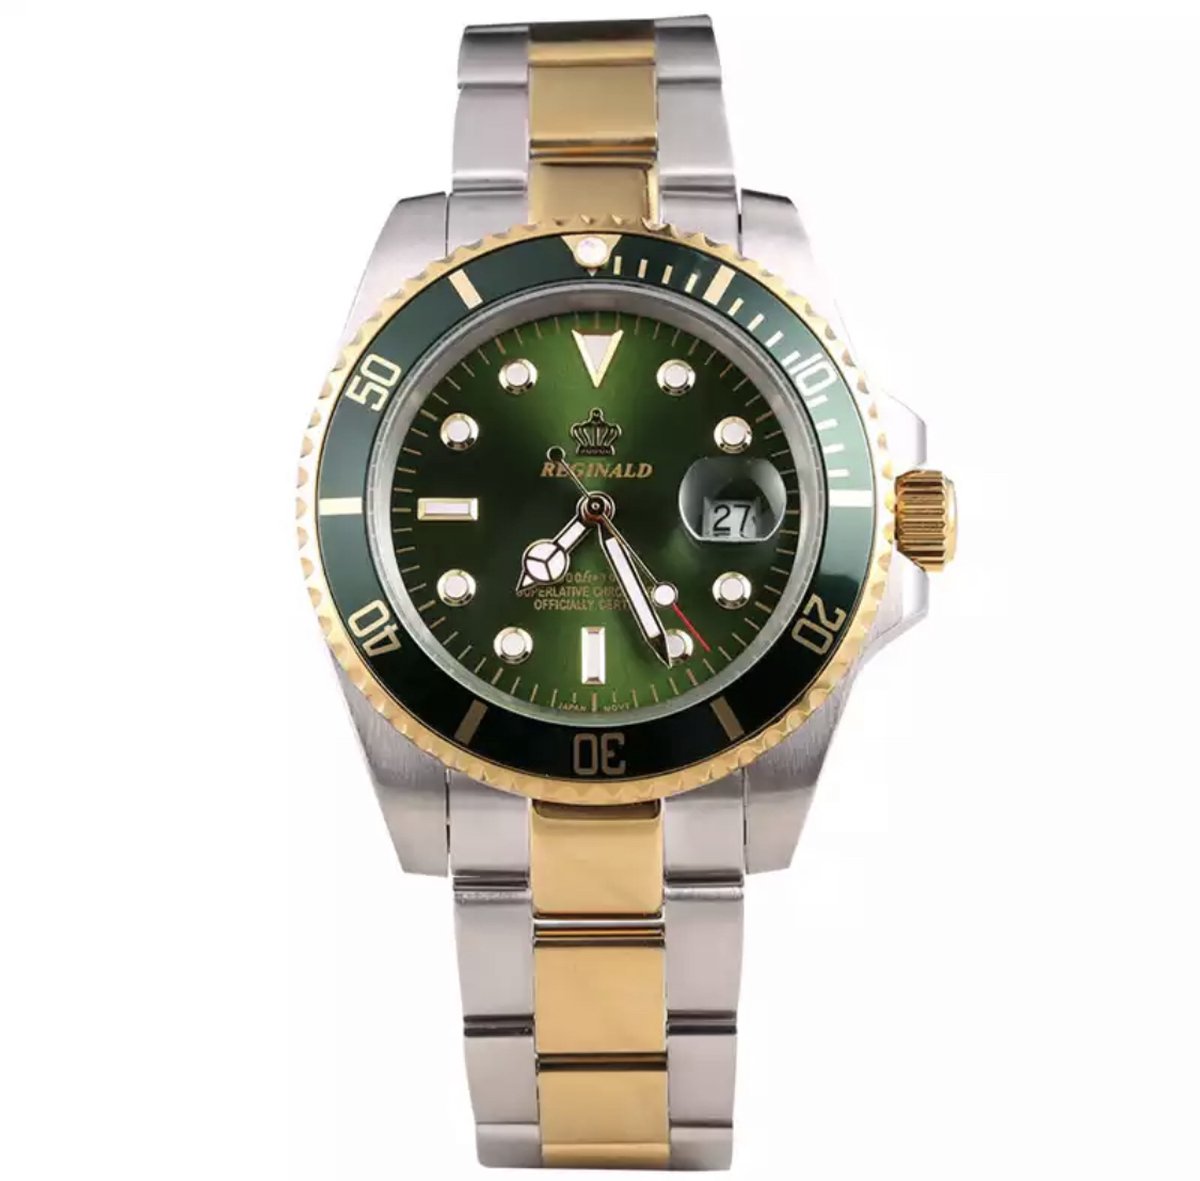 Reginald Horloges - Gold Green - Horloge mannen - Luxe Design - Heren horloge - 40 mm - Roestvrij Staal - Waterdicht - Schokbestendig - Geschenkset